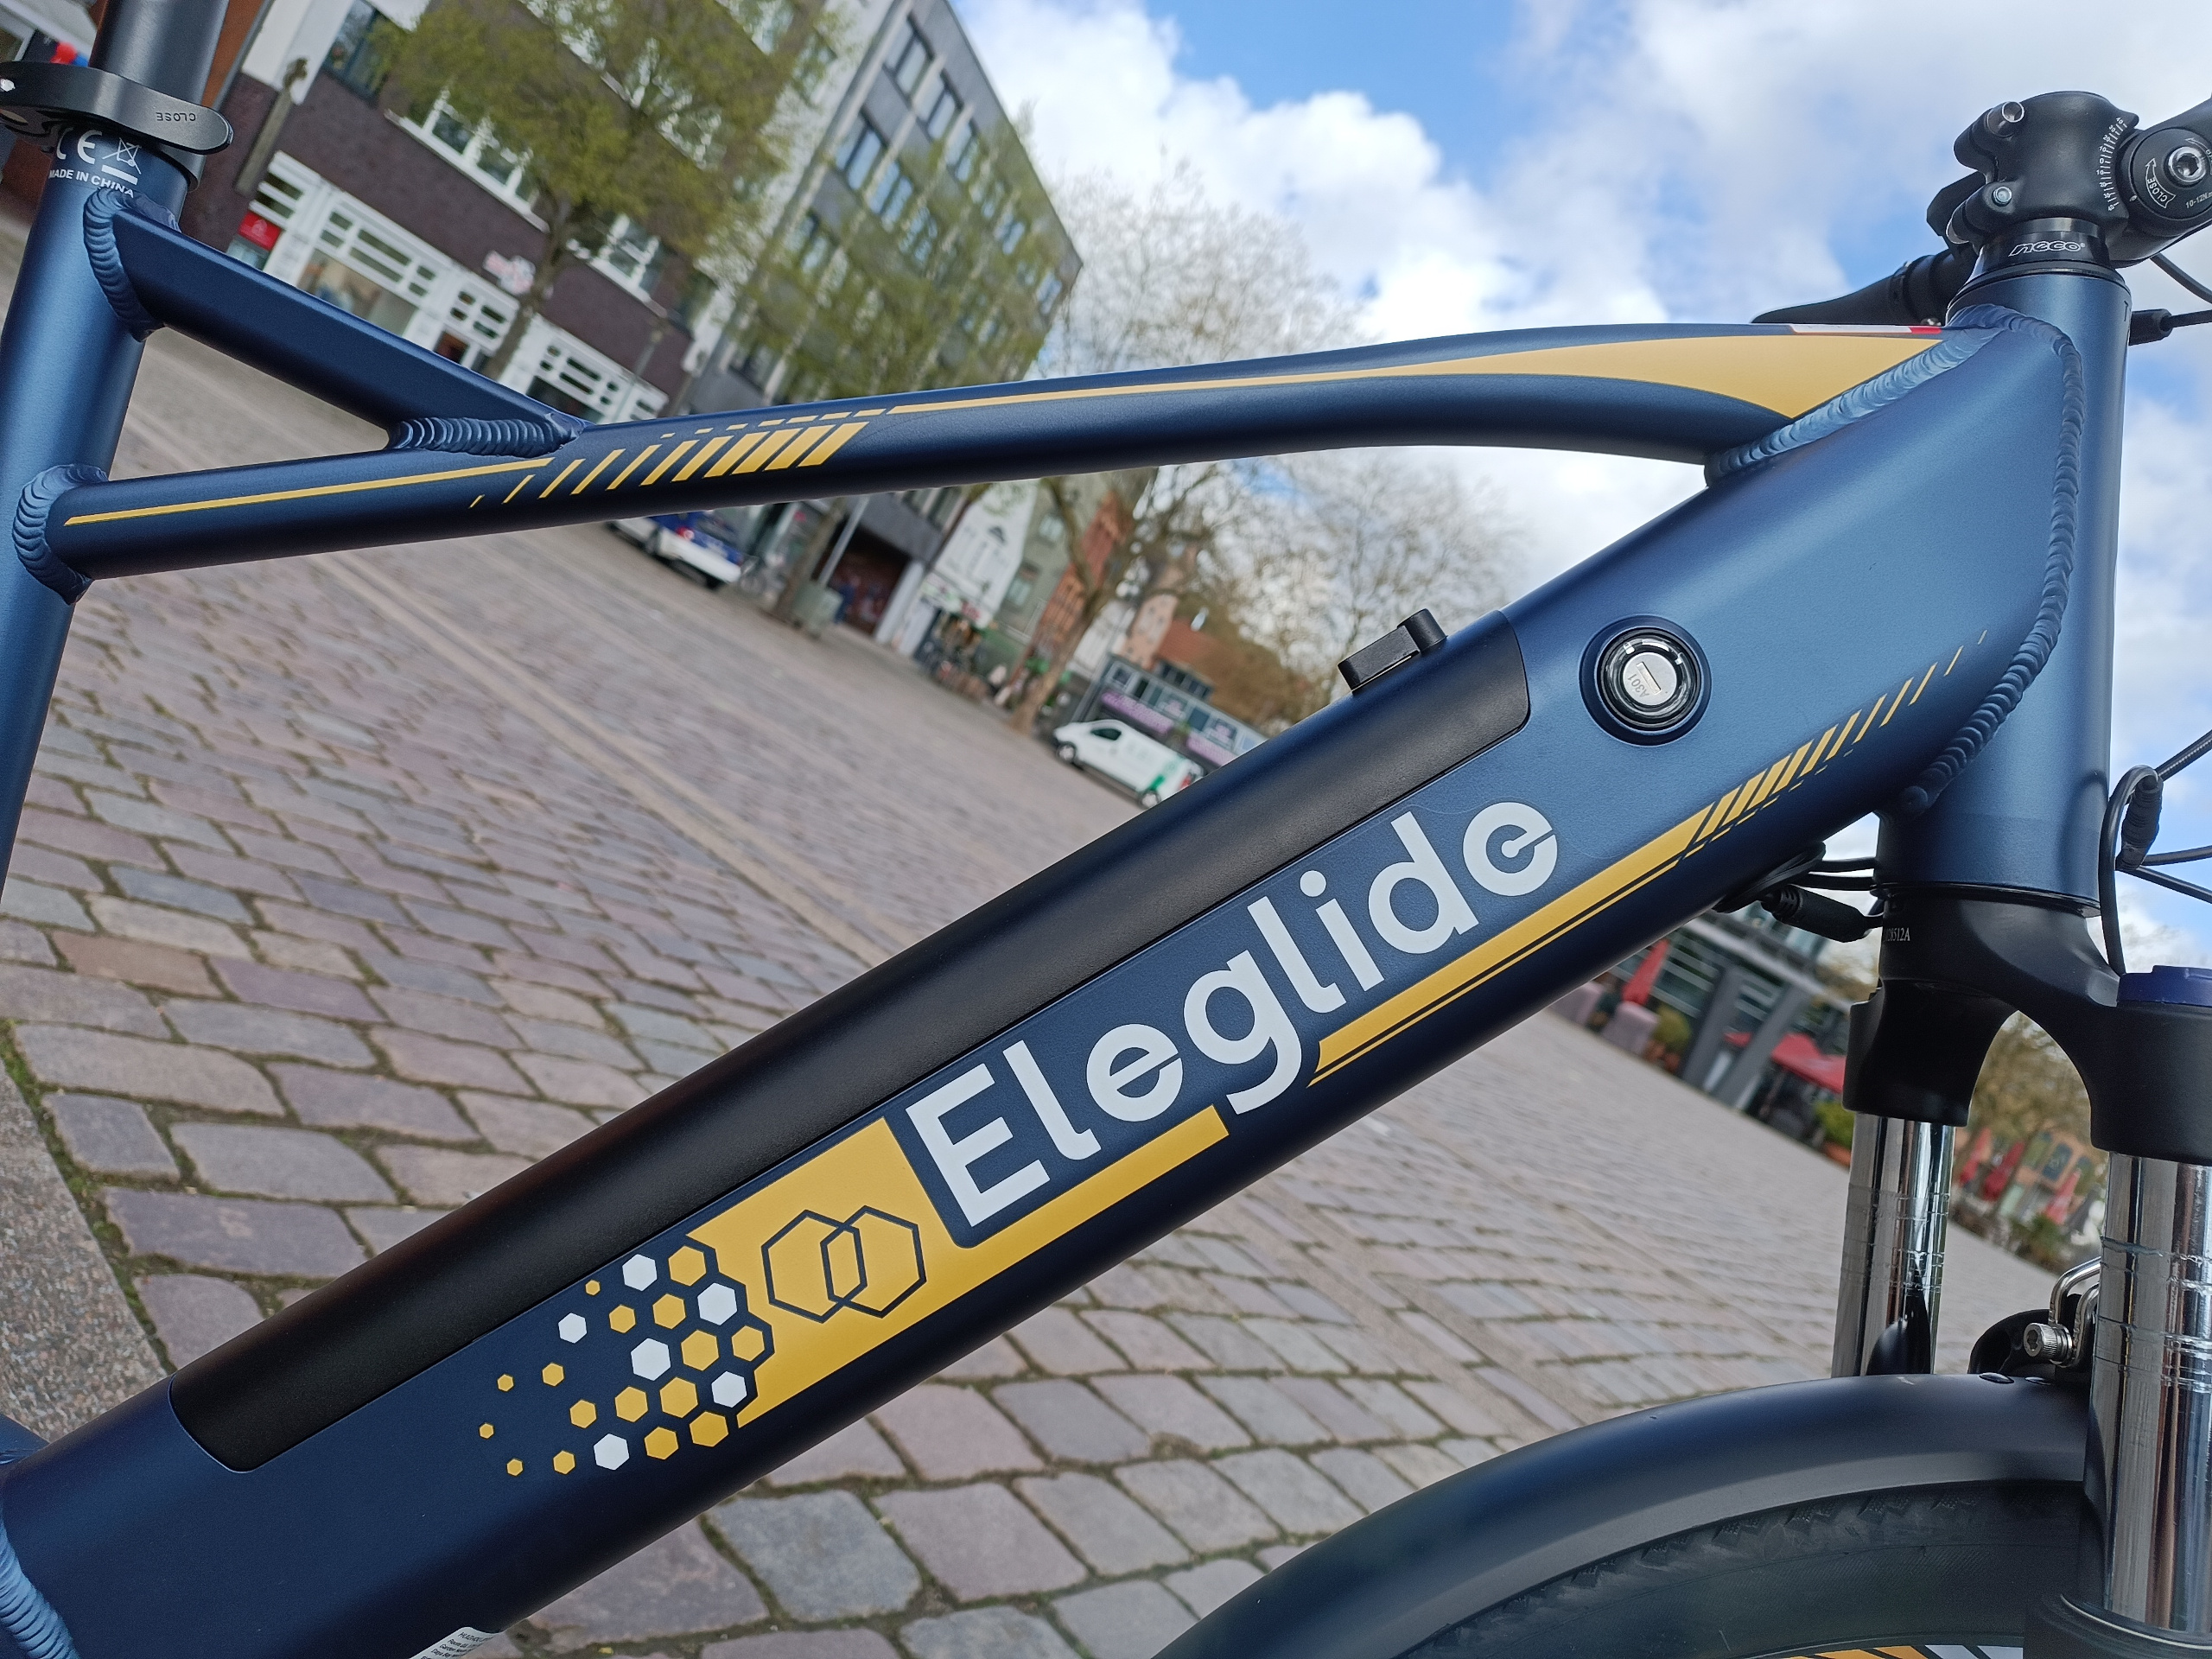 Details wie der integrierteAkku runden das E-Bike ab | Quelle: ebiketester24.de